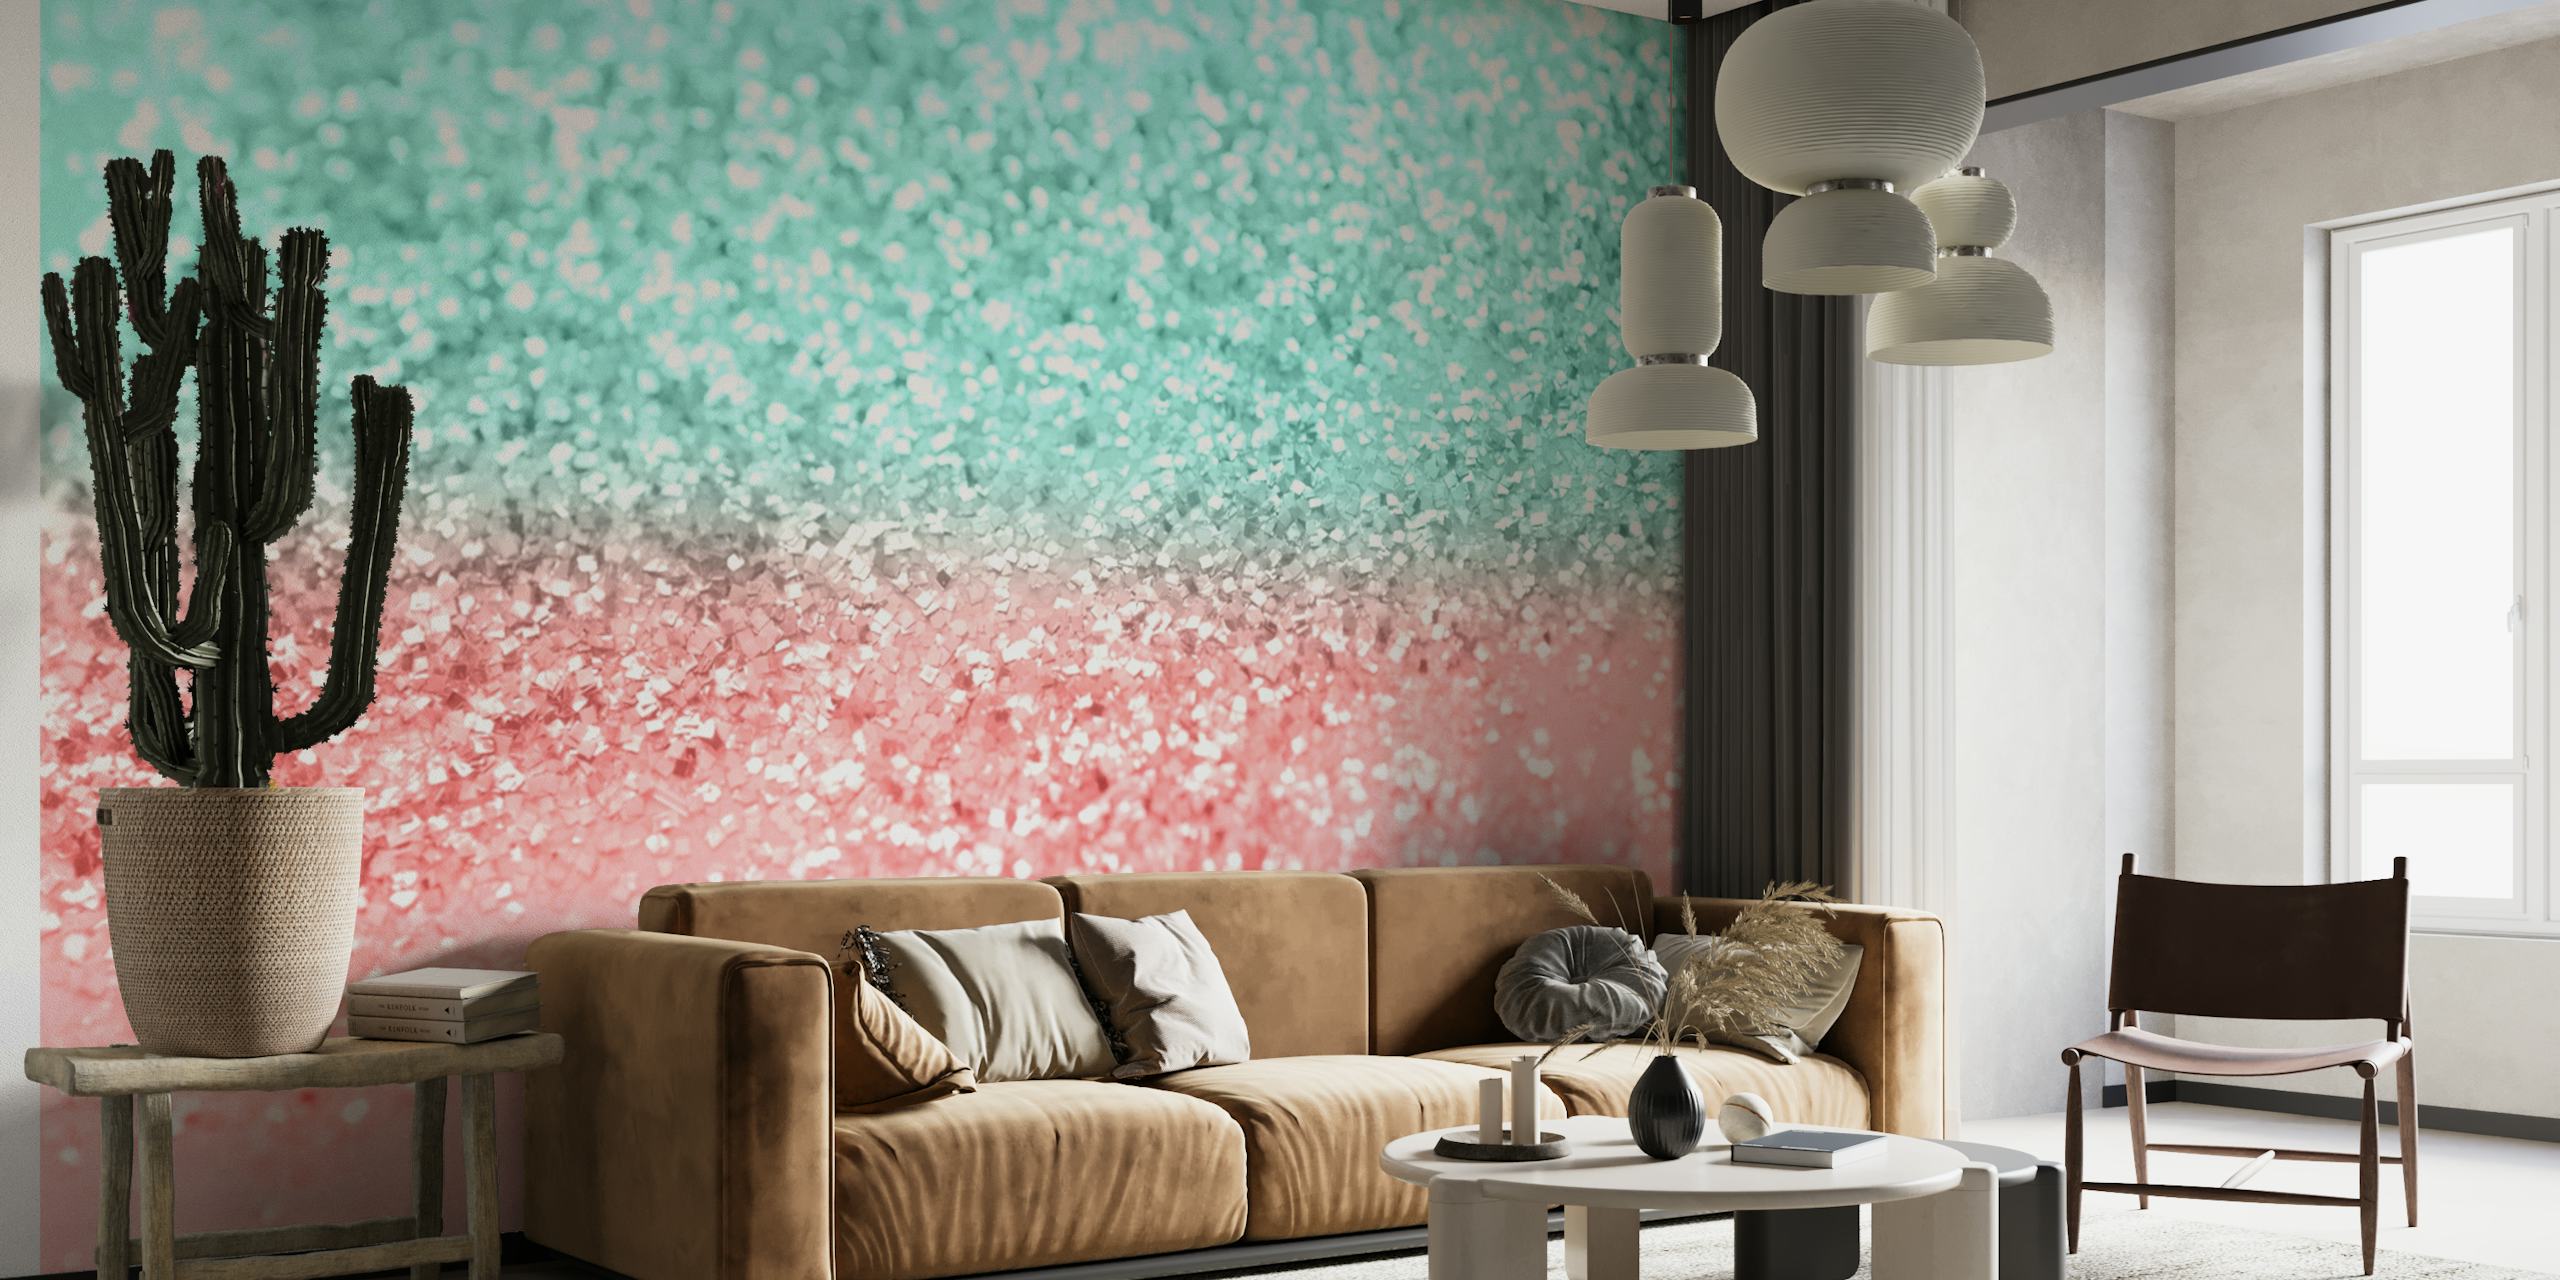 Summer Vibes Glitter 1 seinämaalaus pastellin vesi- ja vaaleanpunaisilla sävyillä ja kimaltelevalla efektillä